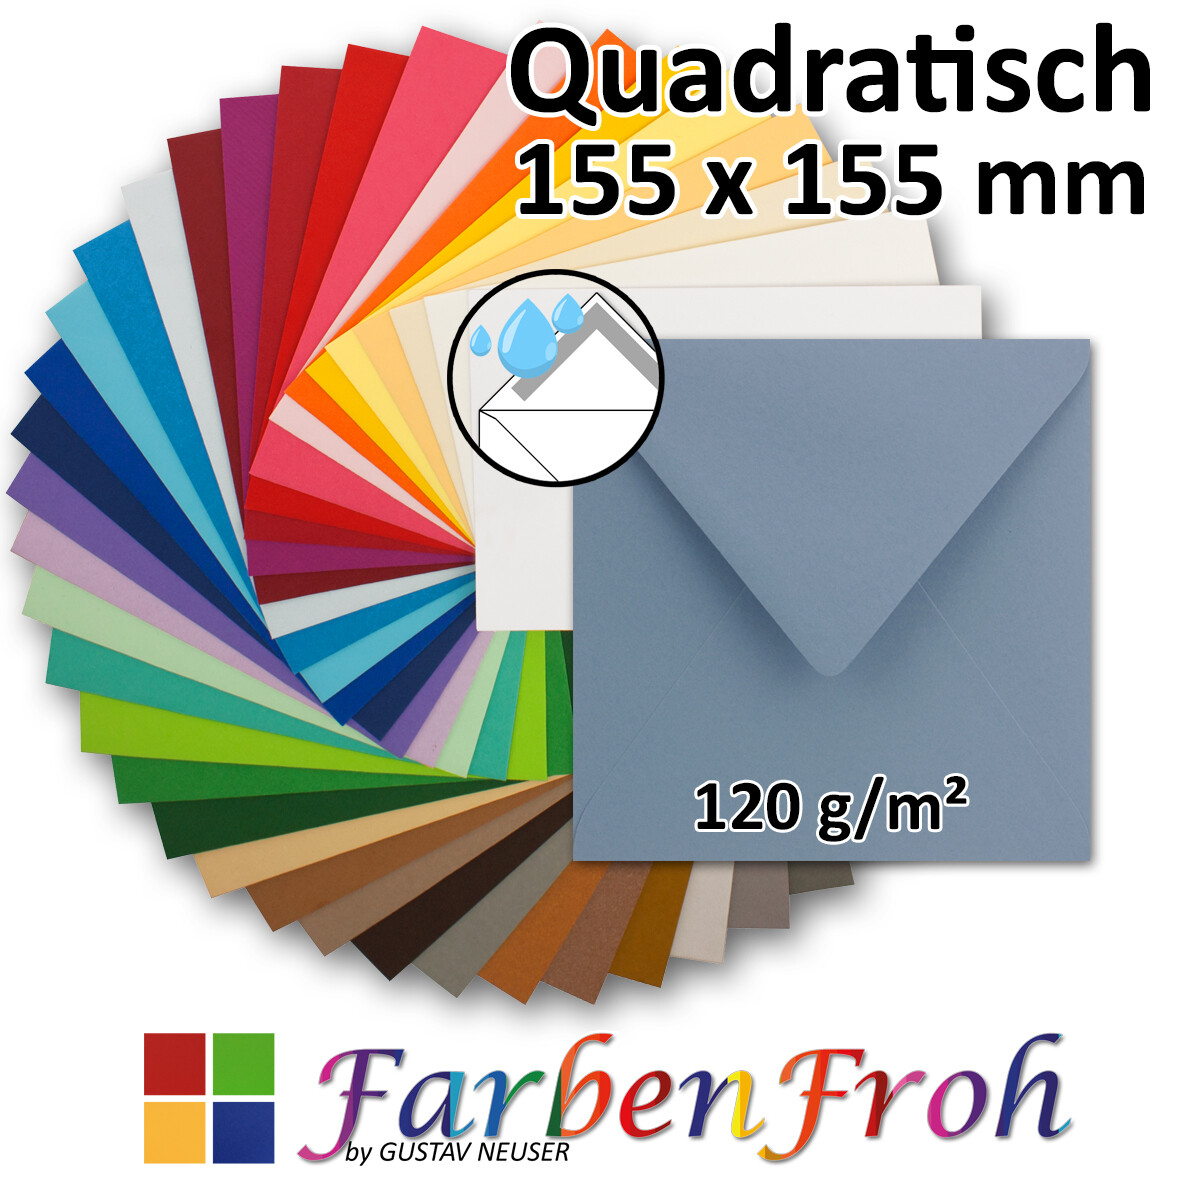 25 Sand-Braun quadratische Kraftpapier-Umschläge 15x15cm Öko Kuvers quadratisch 